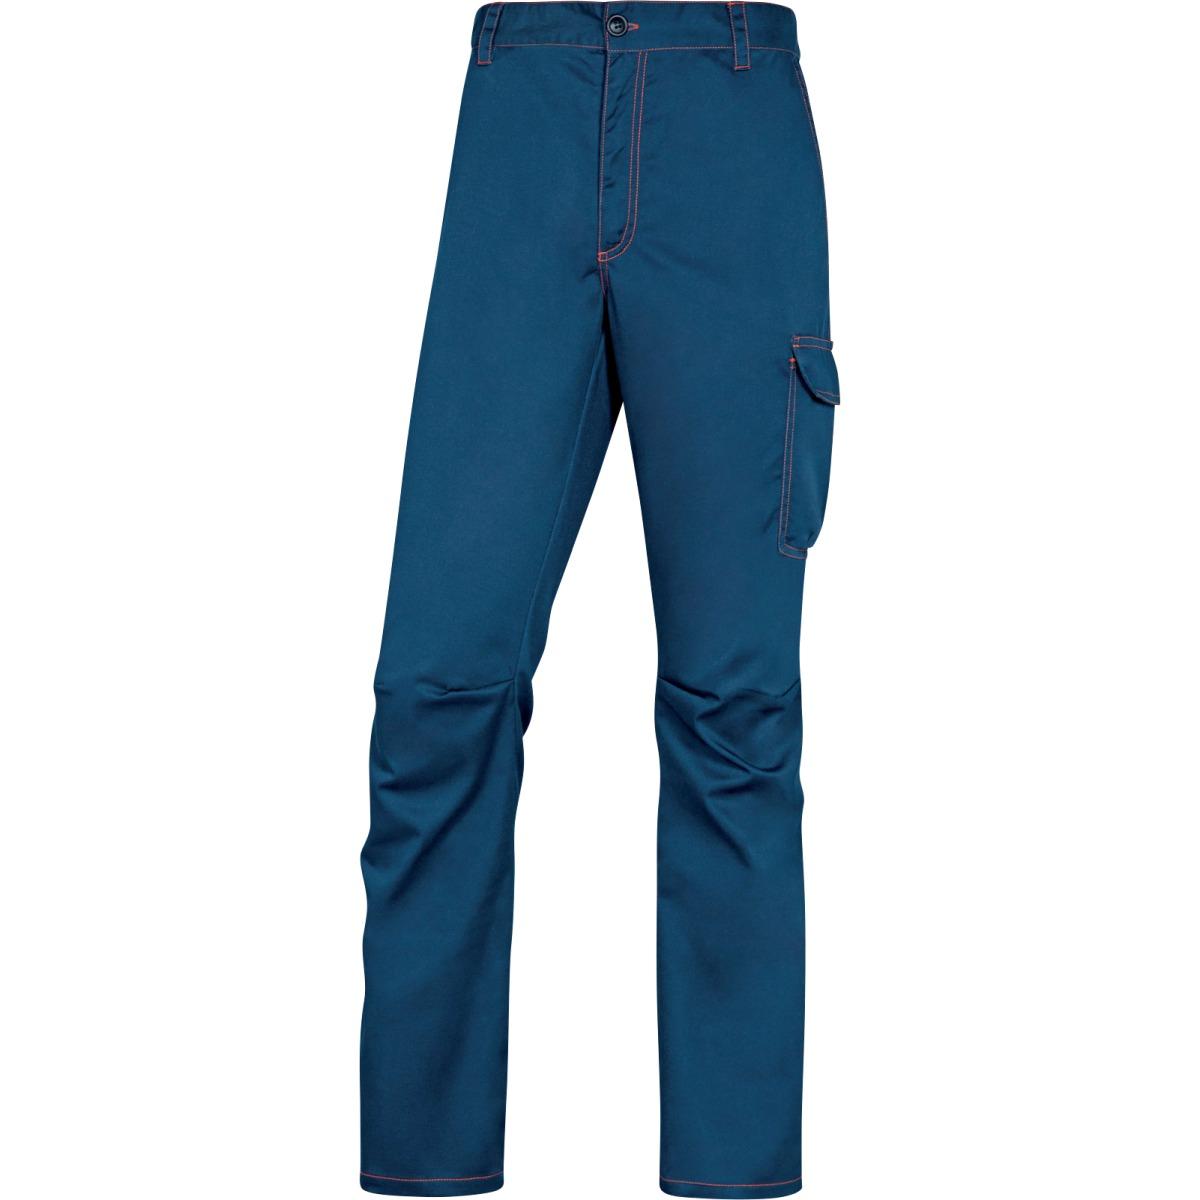 Deltaplus - Pantaloni da lavoro blu - Taglia L - PANOSTRPA